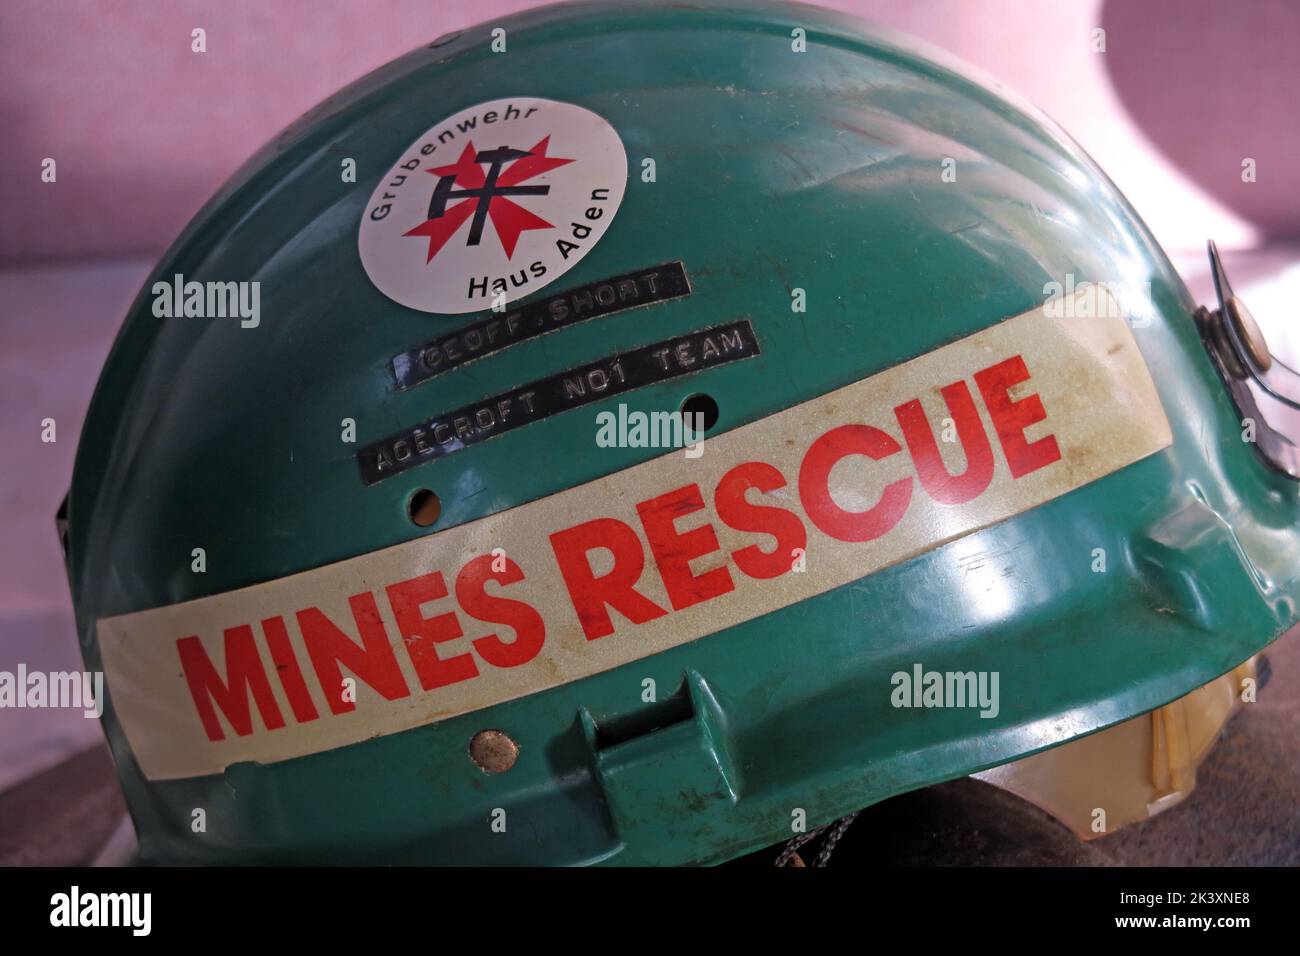 Geoff Short - casque de sauvetage pour mines d'Agecroft No1 TEAM, mine de charbon, mine de charbon Astley Green, Leigh, Greater Manchester, Lancashire, Angleterre, Royaume-Uni Banque D'Images